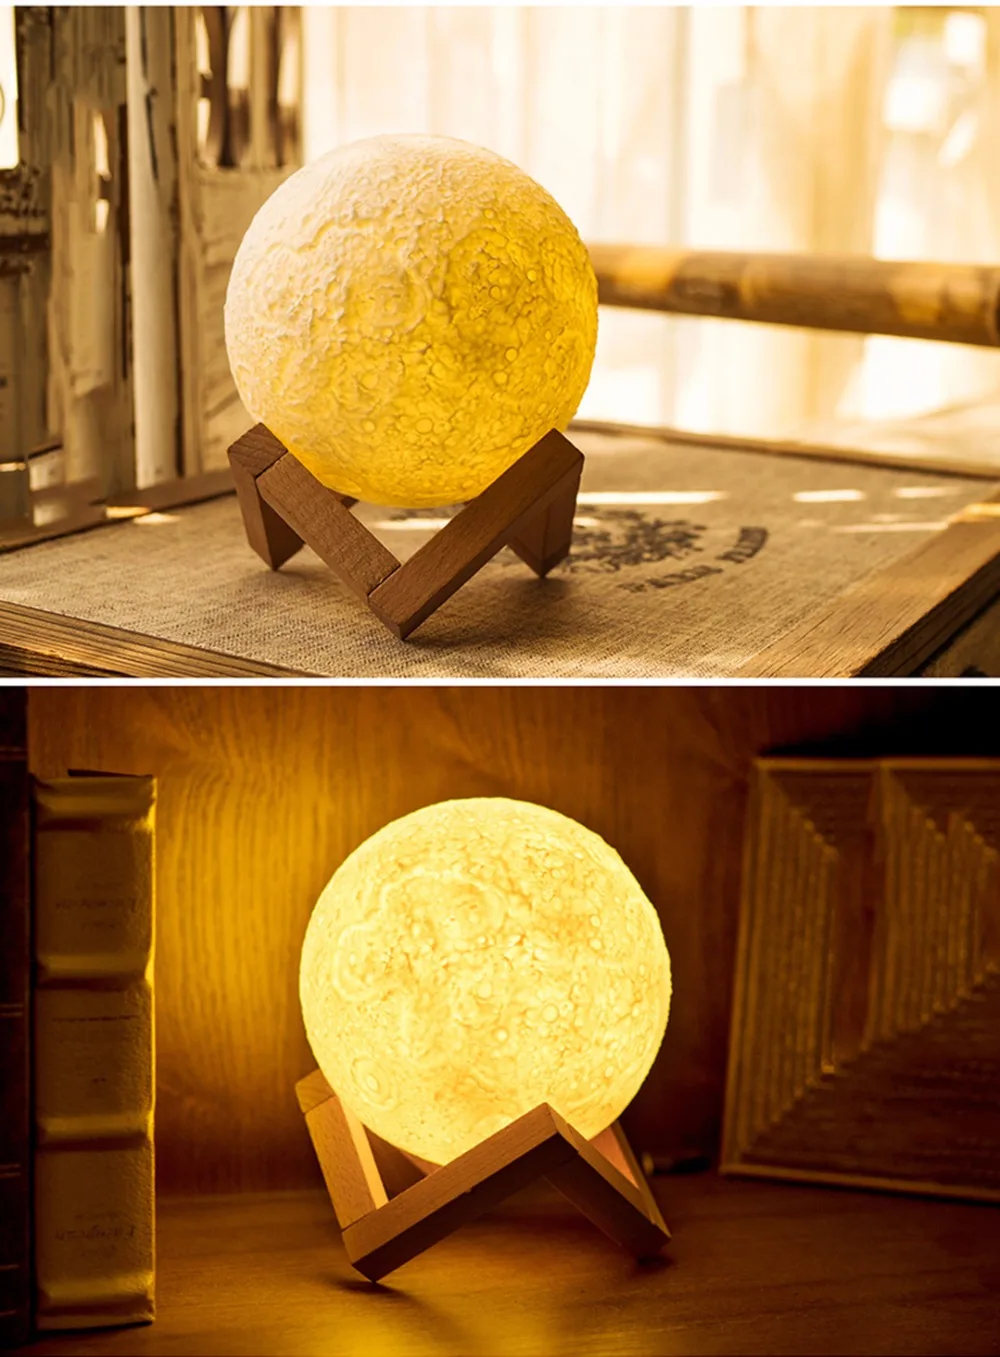 Луна лампа 3D печать Led Ночник Новинка свет Lunar USB питание сенсорное управление 8-20 см шар яркость с деревянным держателем IL